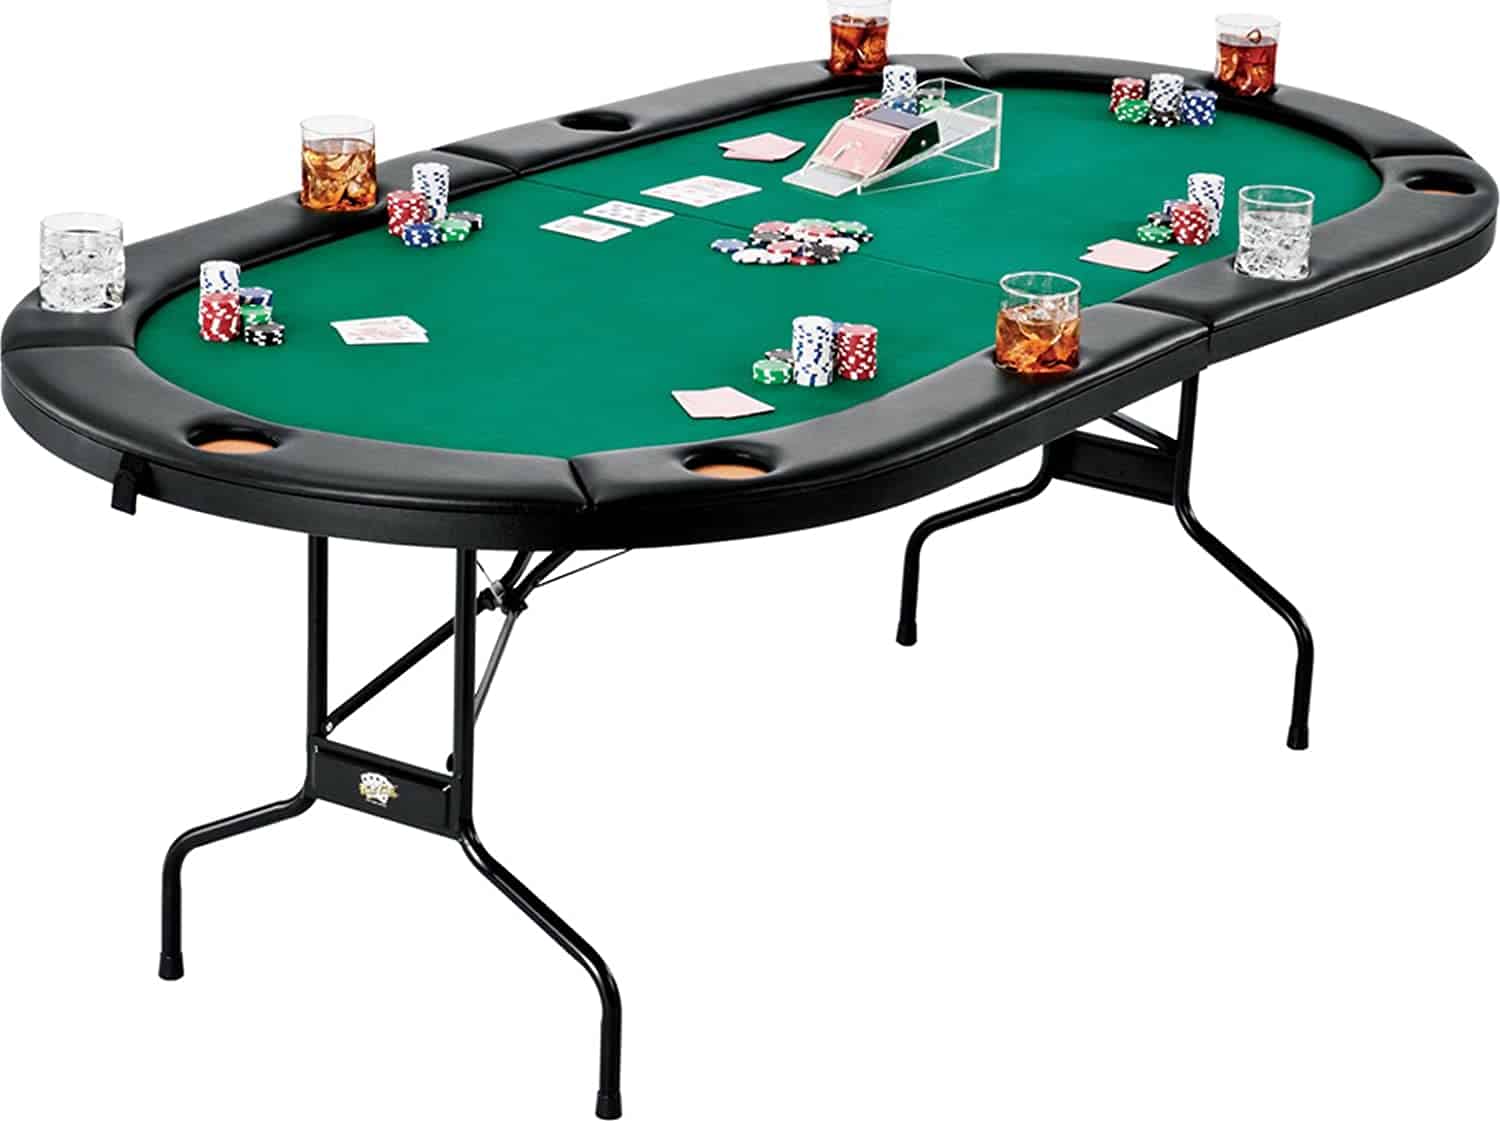 chip leader poker